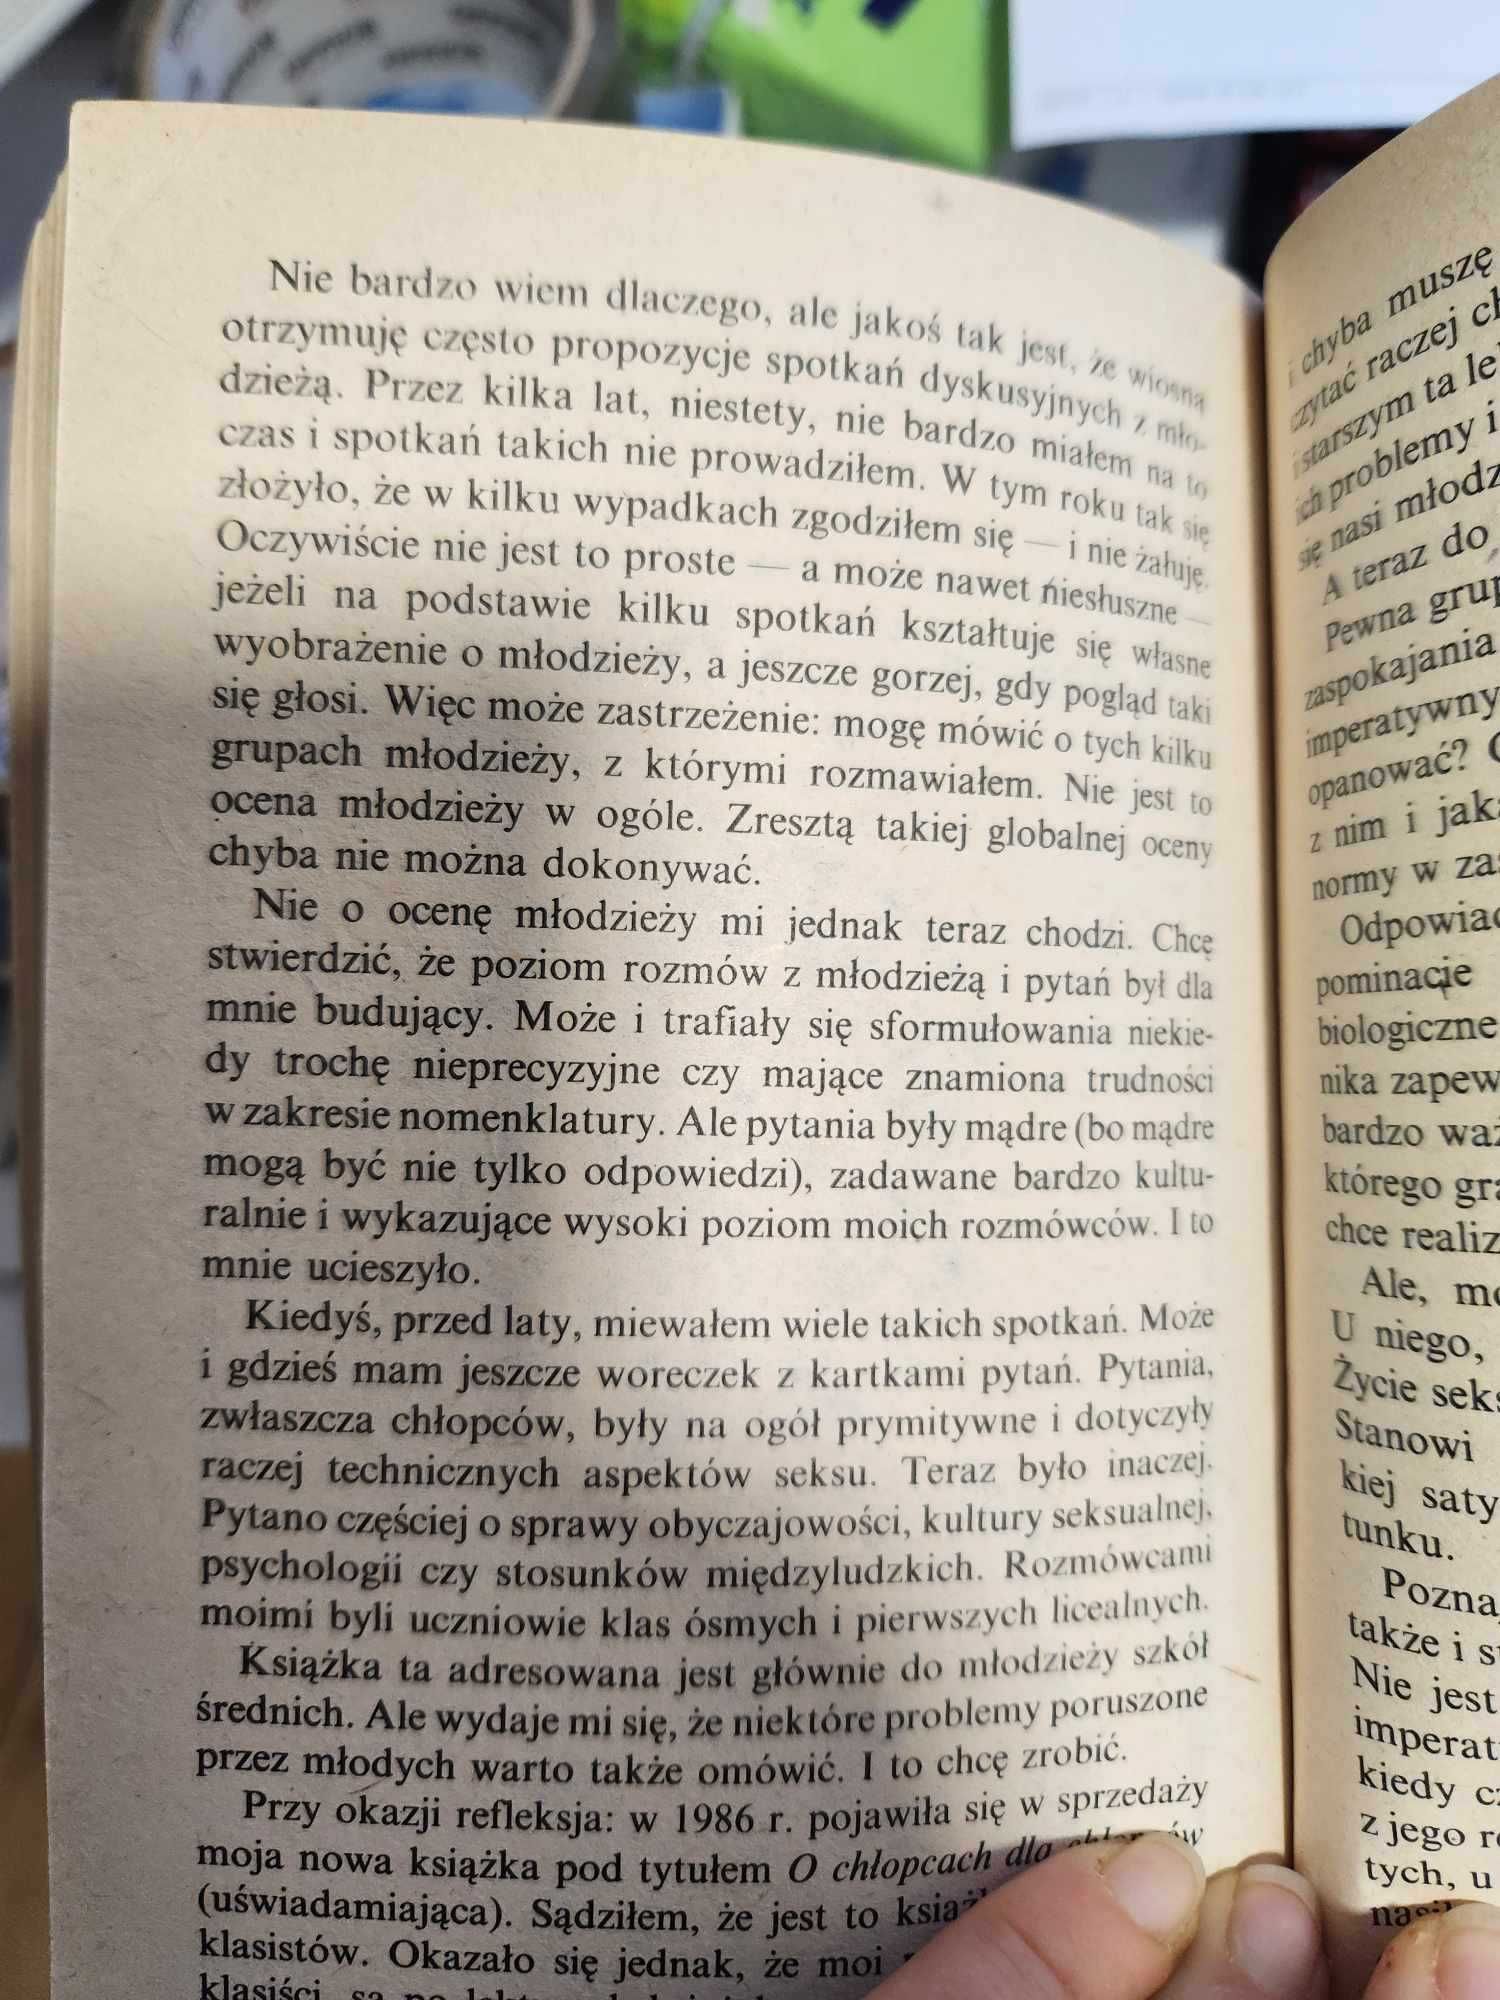 Wstęp do dorosłości Andrzej Jaczewski  1989